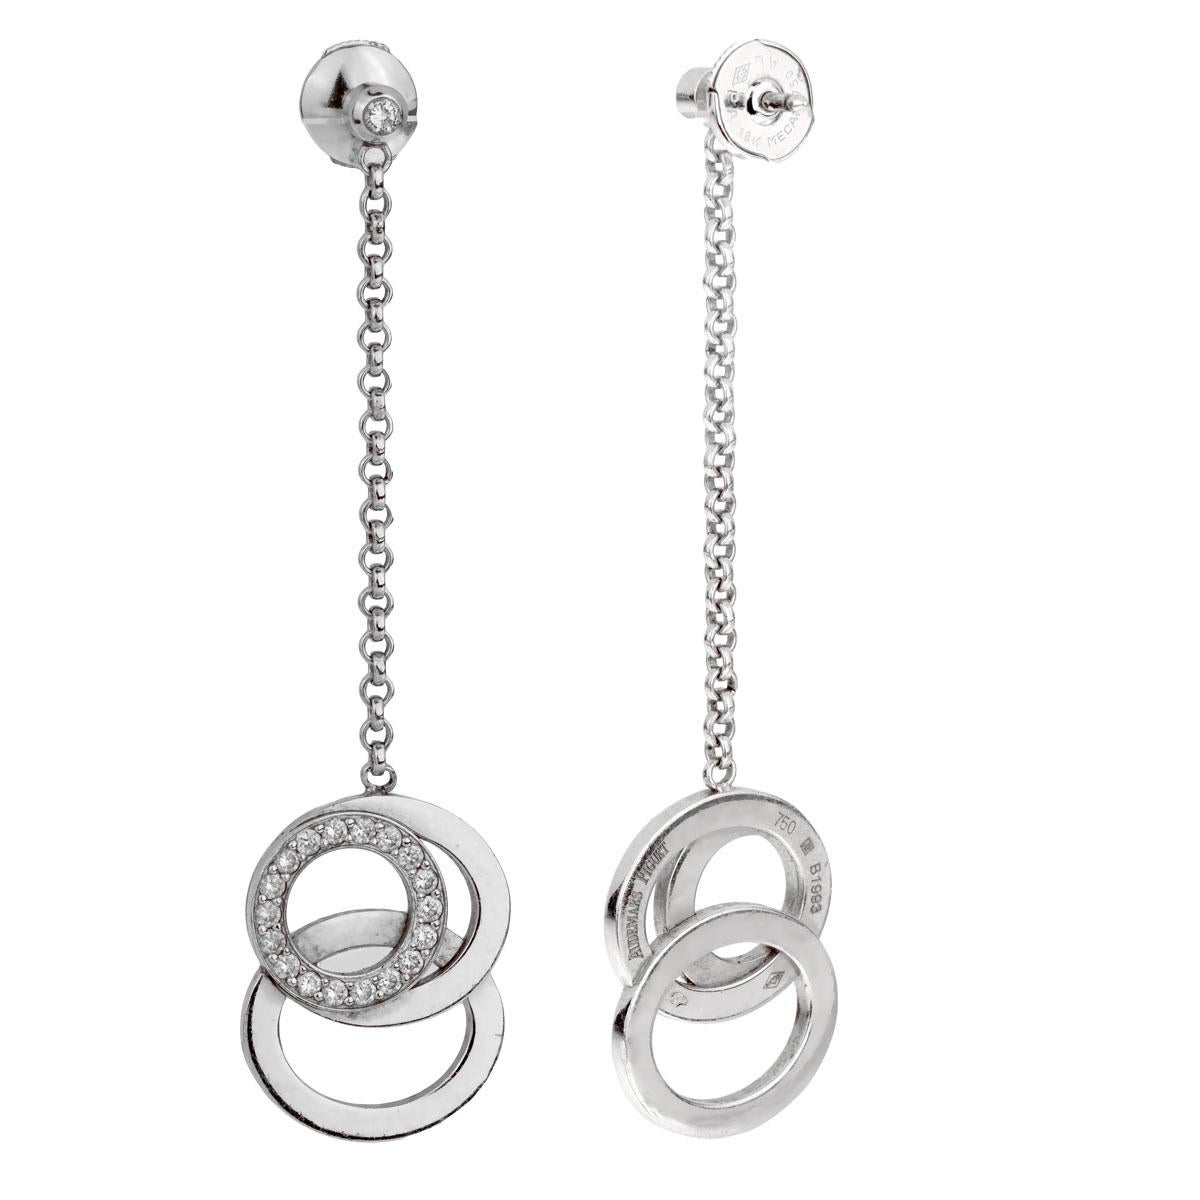 Ein ikonisches Paar Audemars Piguet-Diamantohrringe im Millenary-Design mit runden Diamanten im Brillantschliff aus 18 Karat Weißgold. Die Ohrringe haben einen Gesamtfall von 2,5